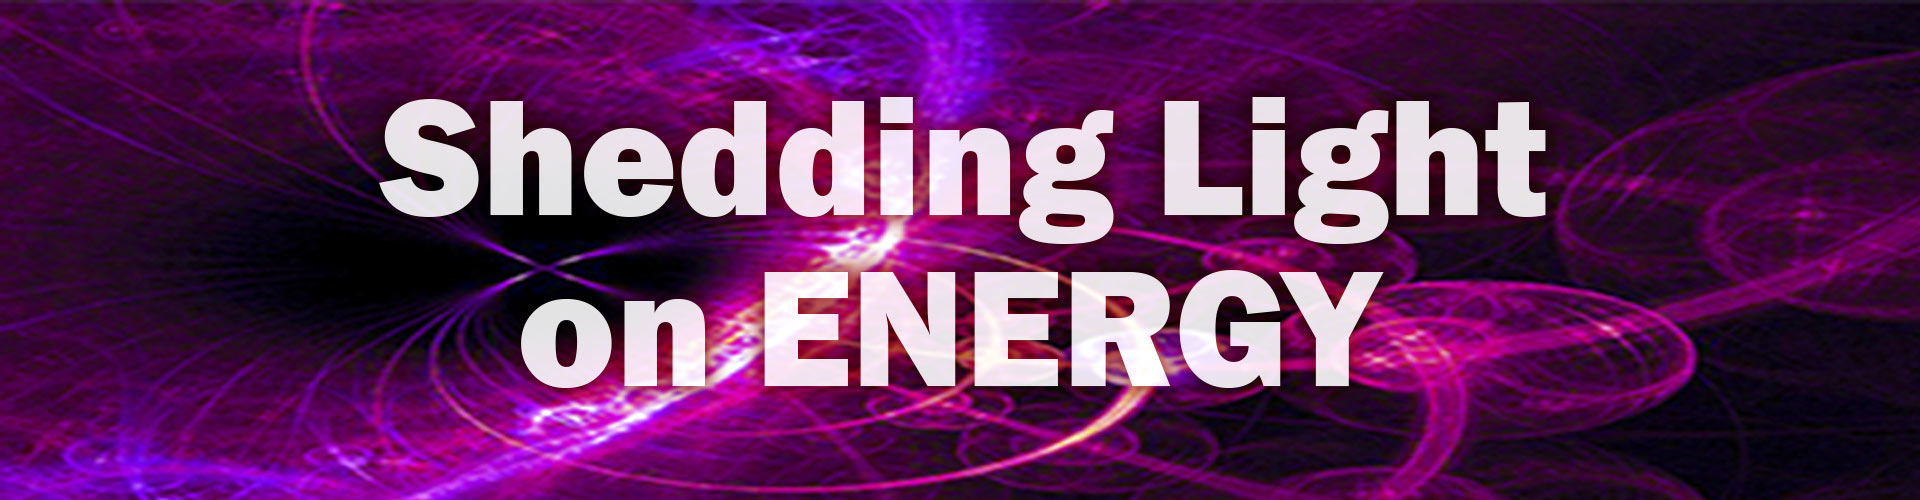 Shedding Light on Energy